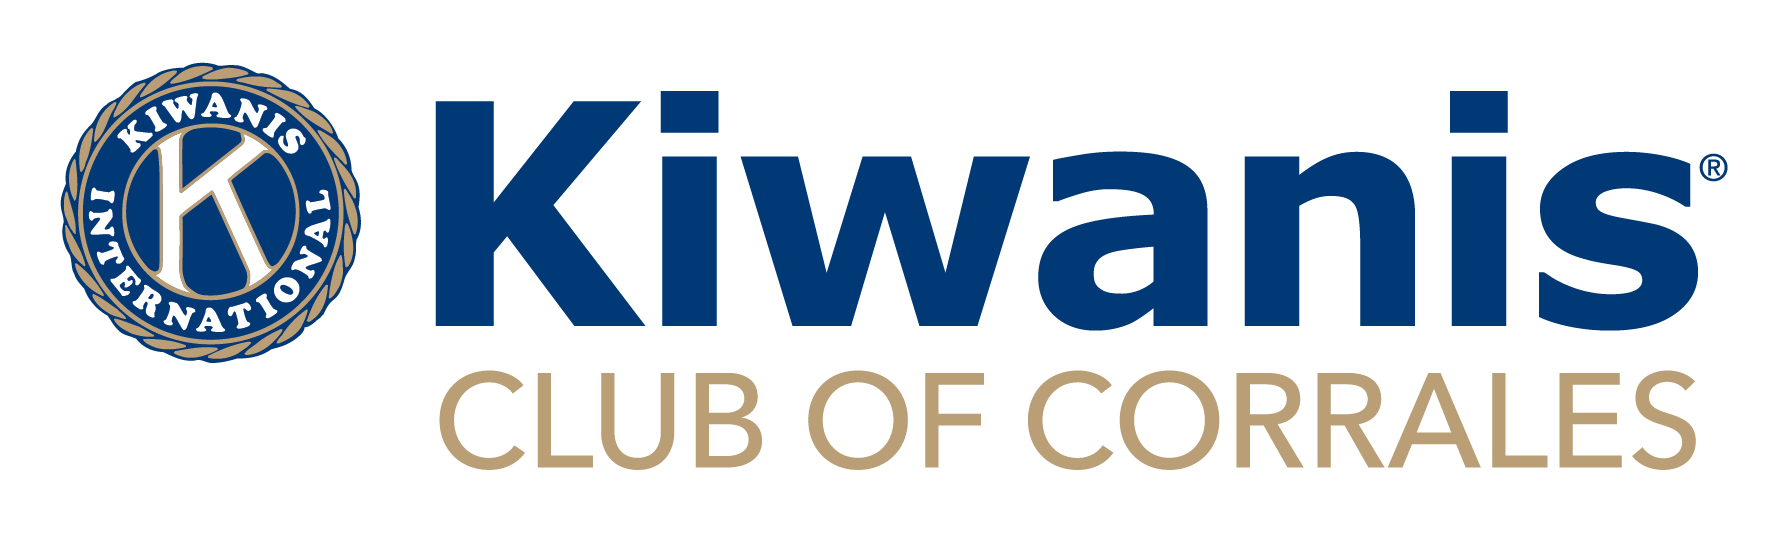 Kiwanis Club of Corrales